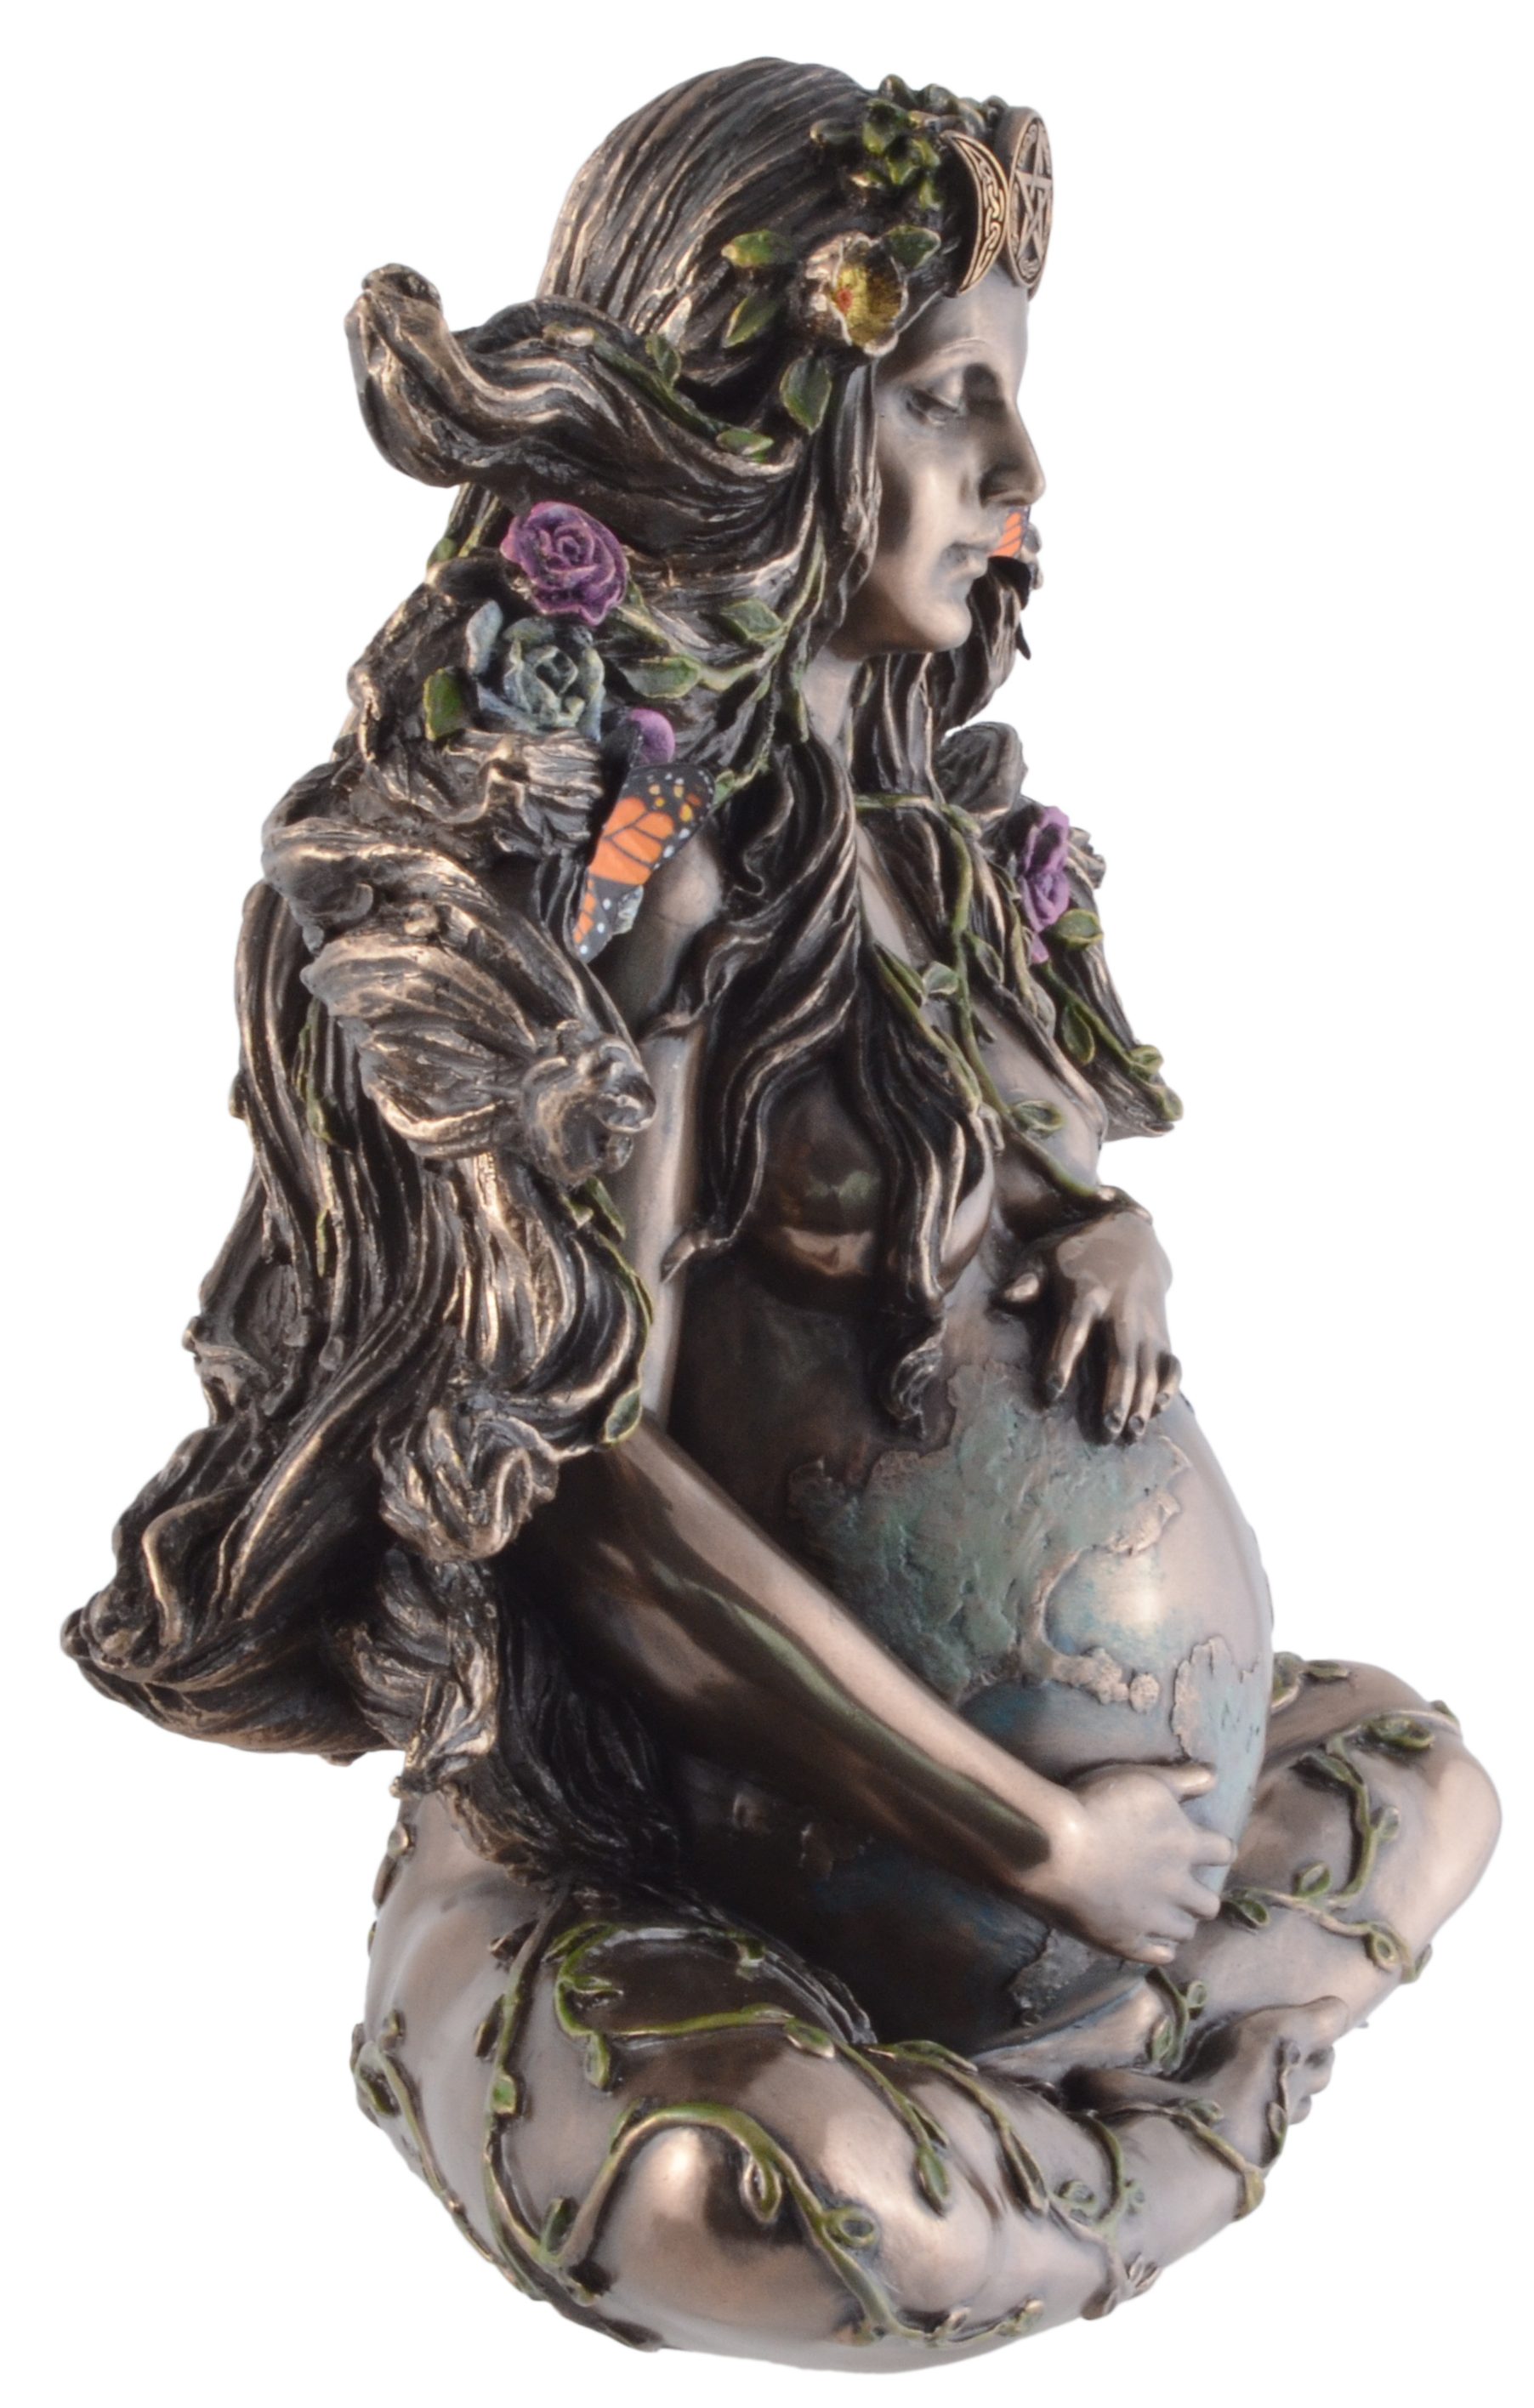 Vogler direct Gmbh bronziert, Kunststein, und Veronese, coloriert, 18x9x18cm by Veronese, - Größe: ca. L/B/H coloriert Dekofigur Erdmutter Gaia bronziert